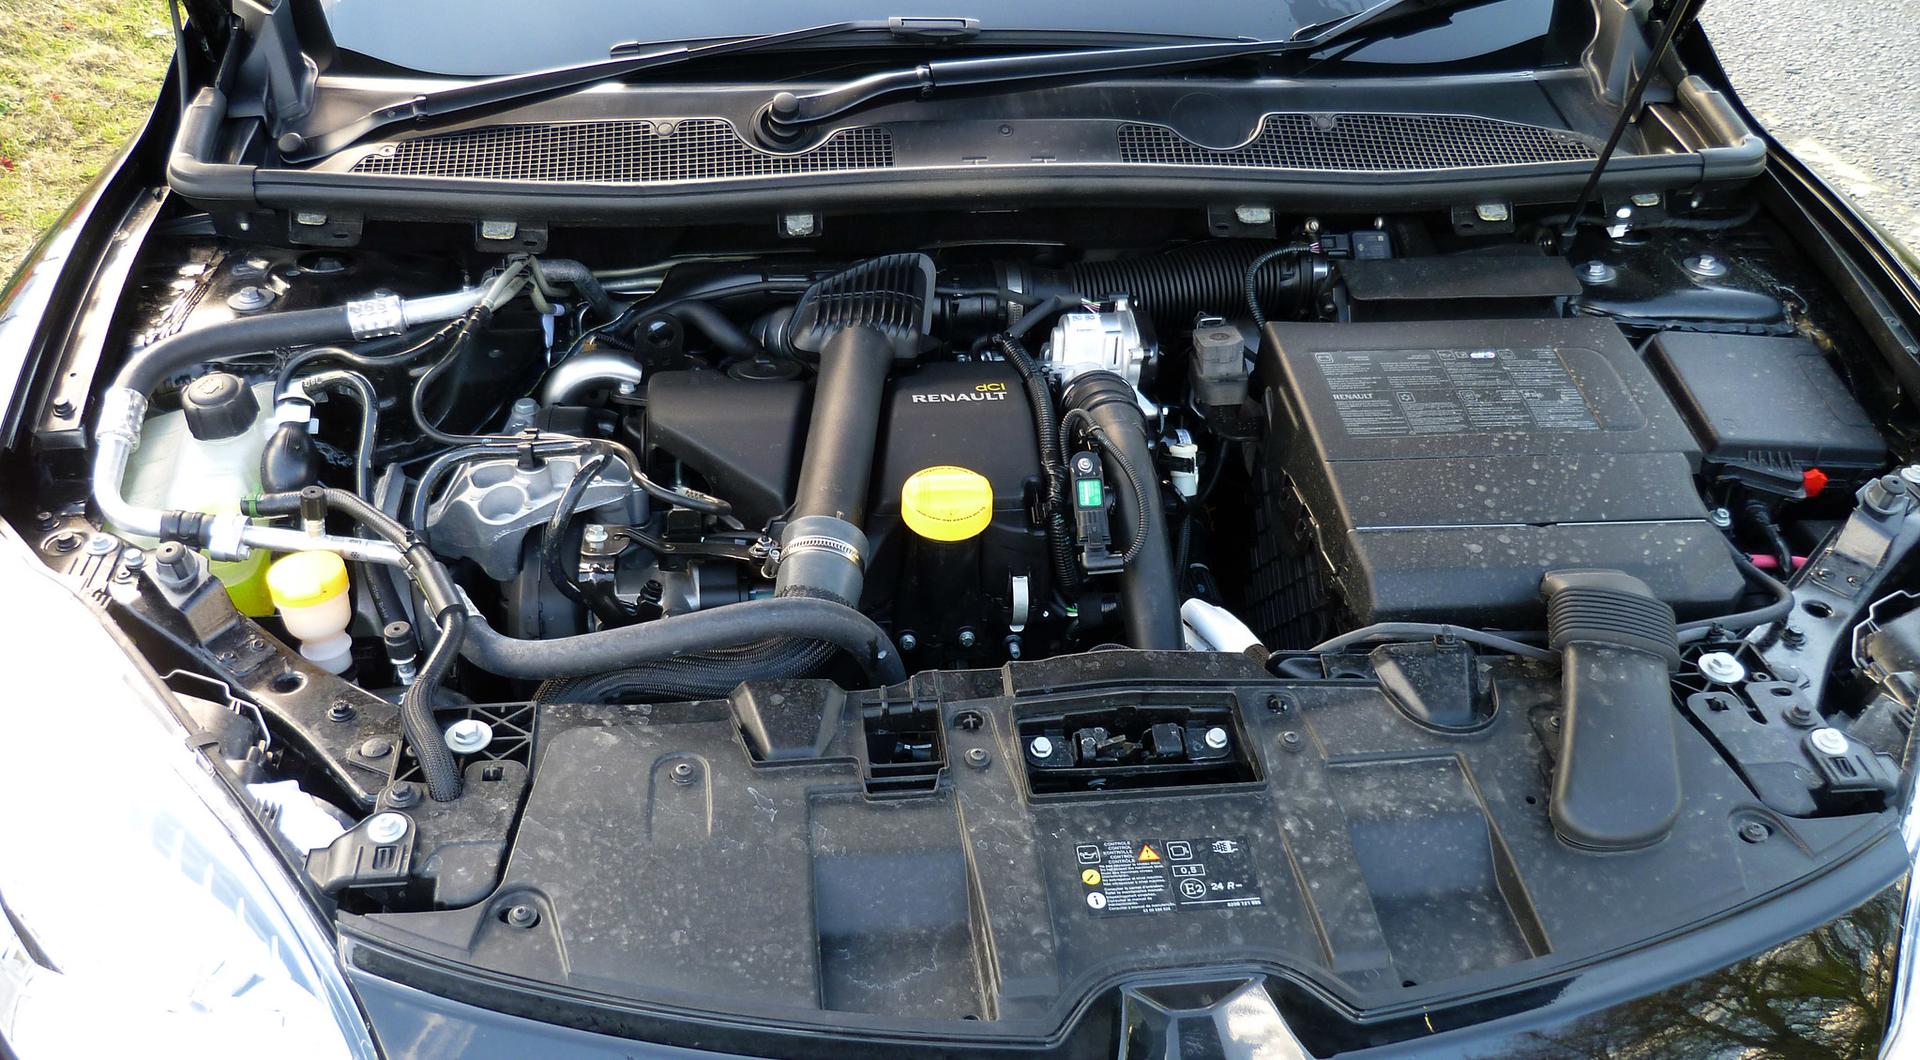 Spolehlivost dCi motorů Renault-Nissan